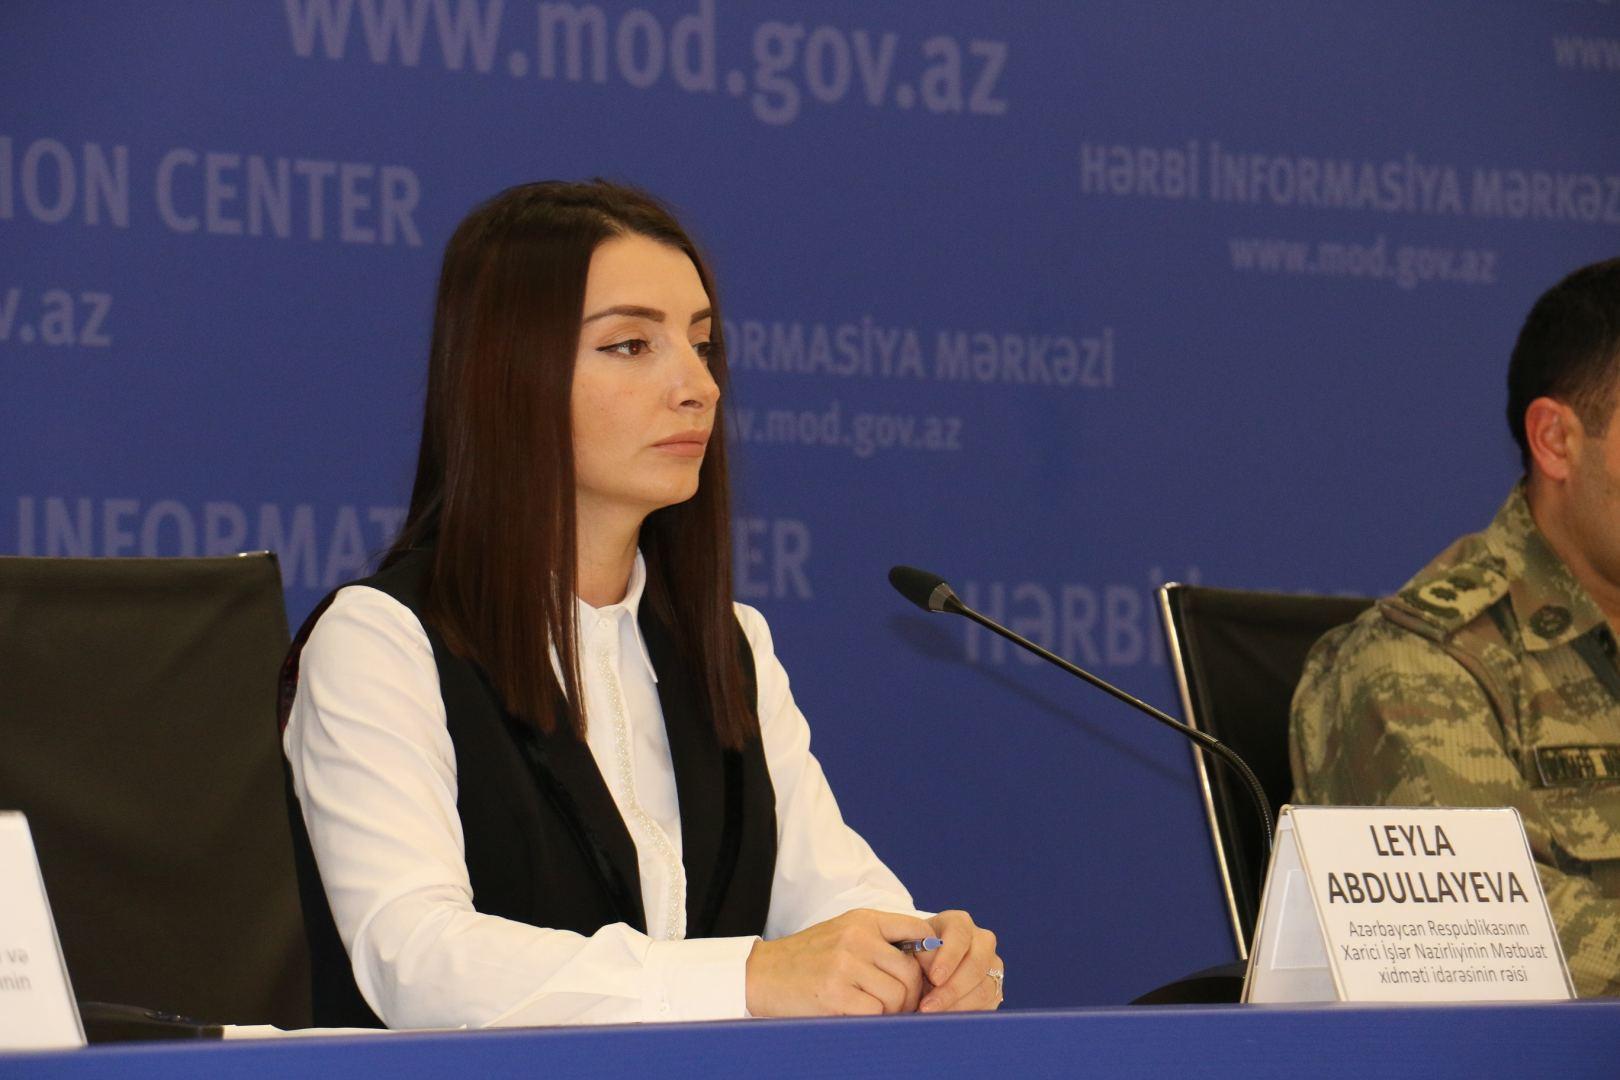 Ermənistan Azərbaycana qarşı hələ də ərazi iddiaları ilə çıxış edir - Leyla Abdullayeva